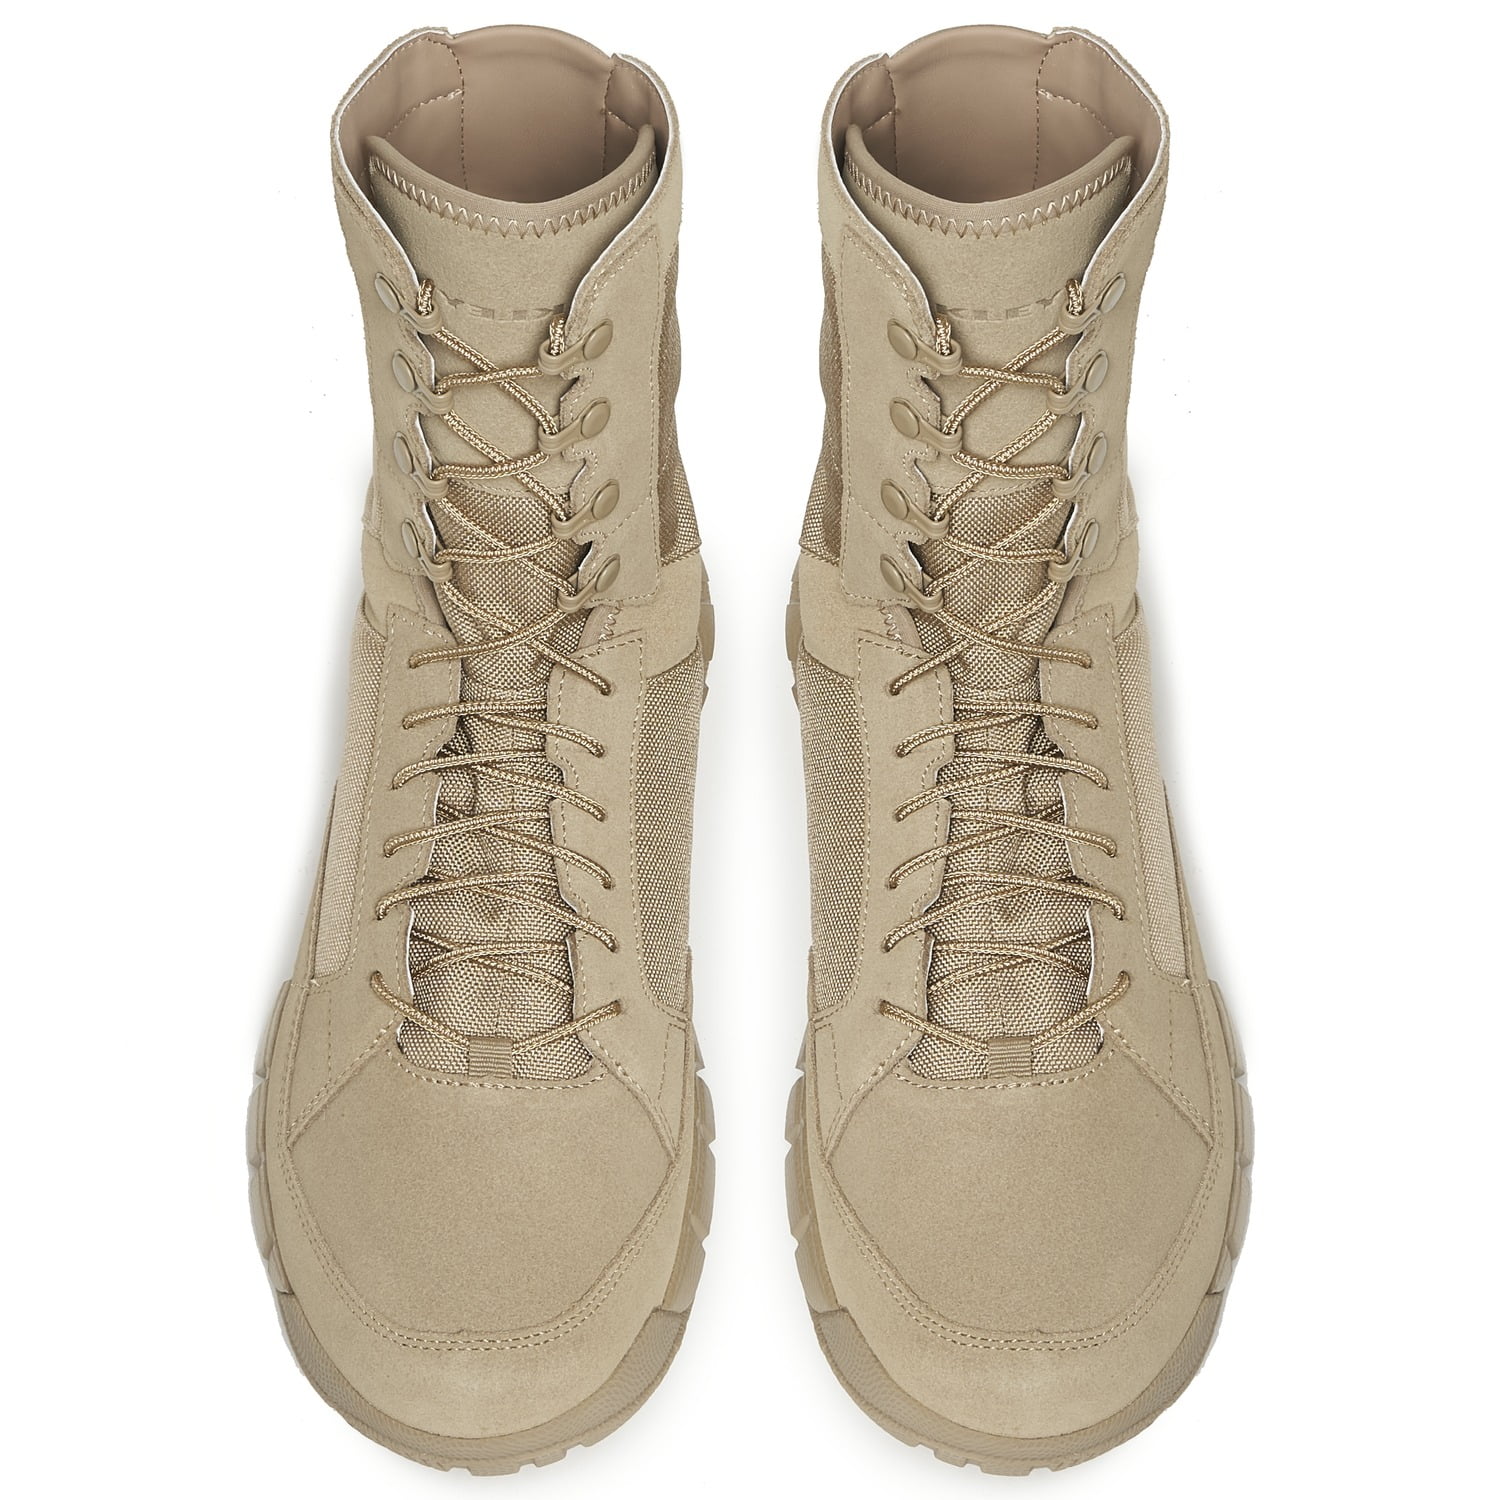 oakley combat boots canada